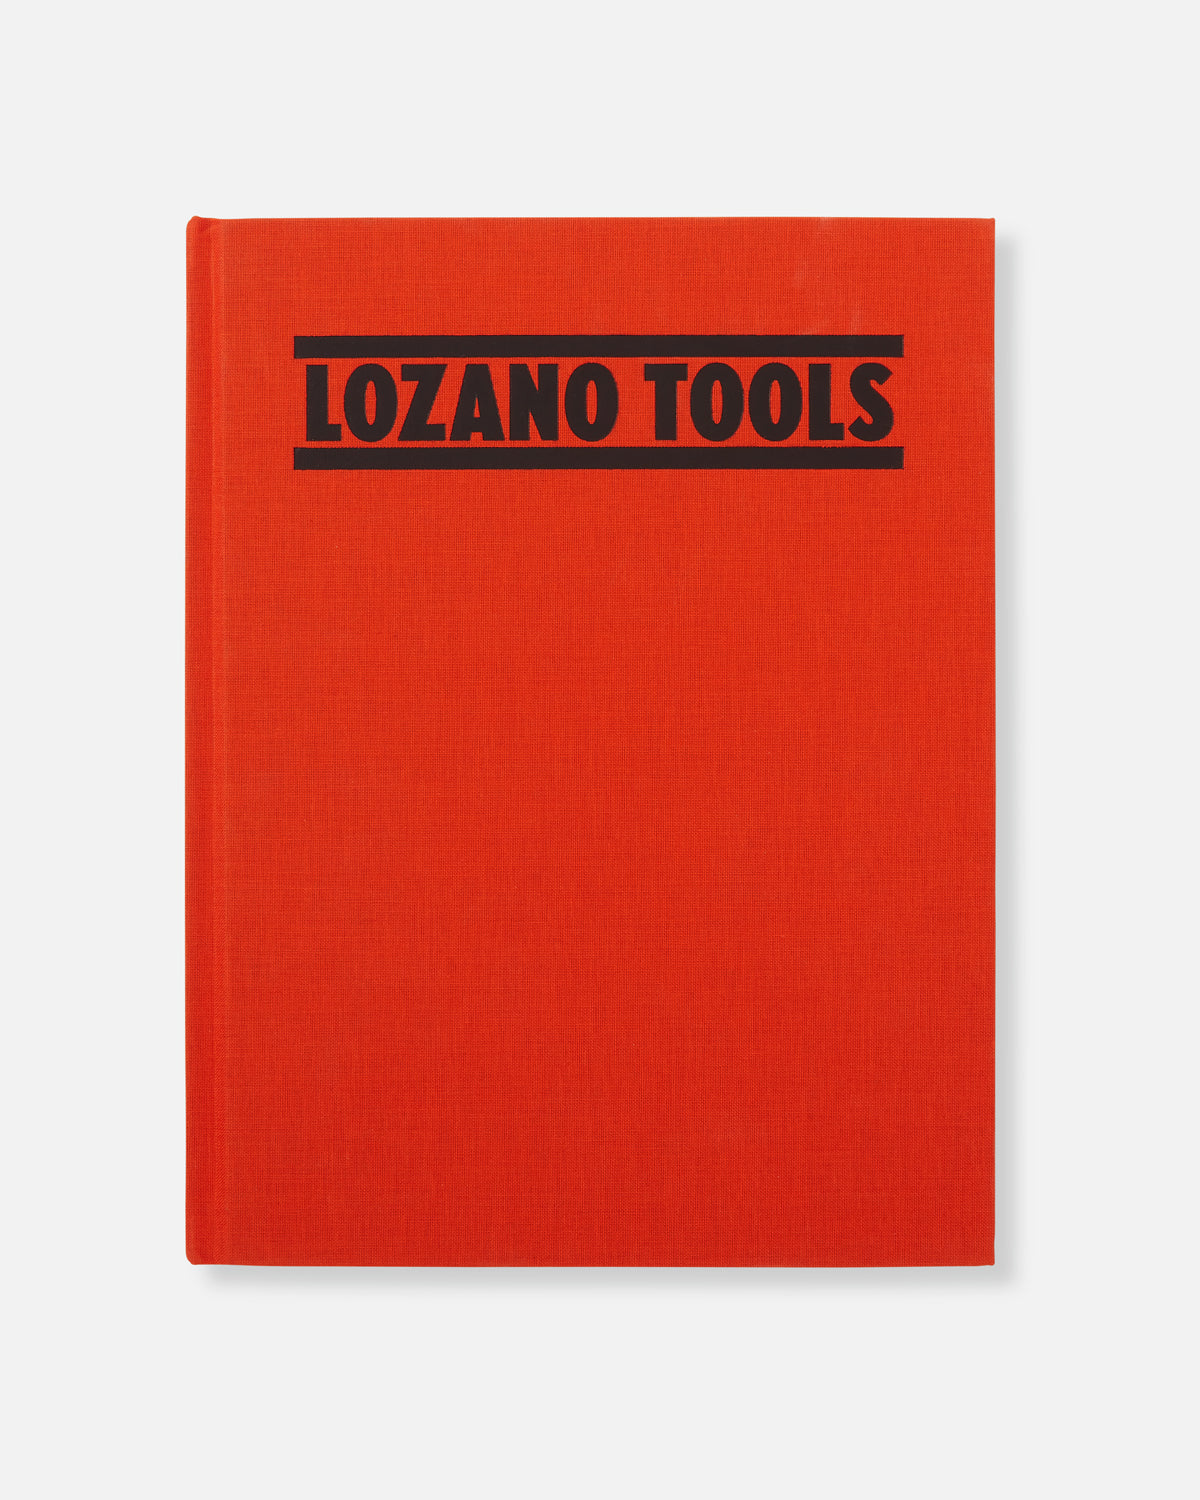 Lee Lozano: Lozano Tools